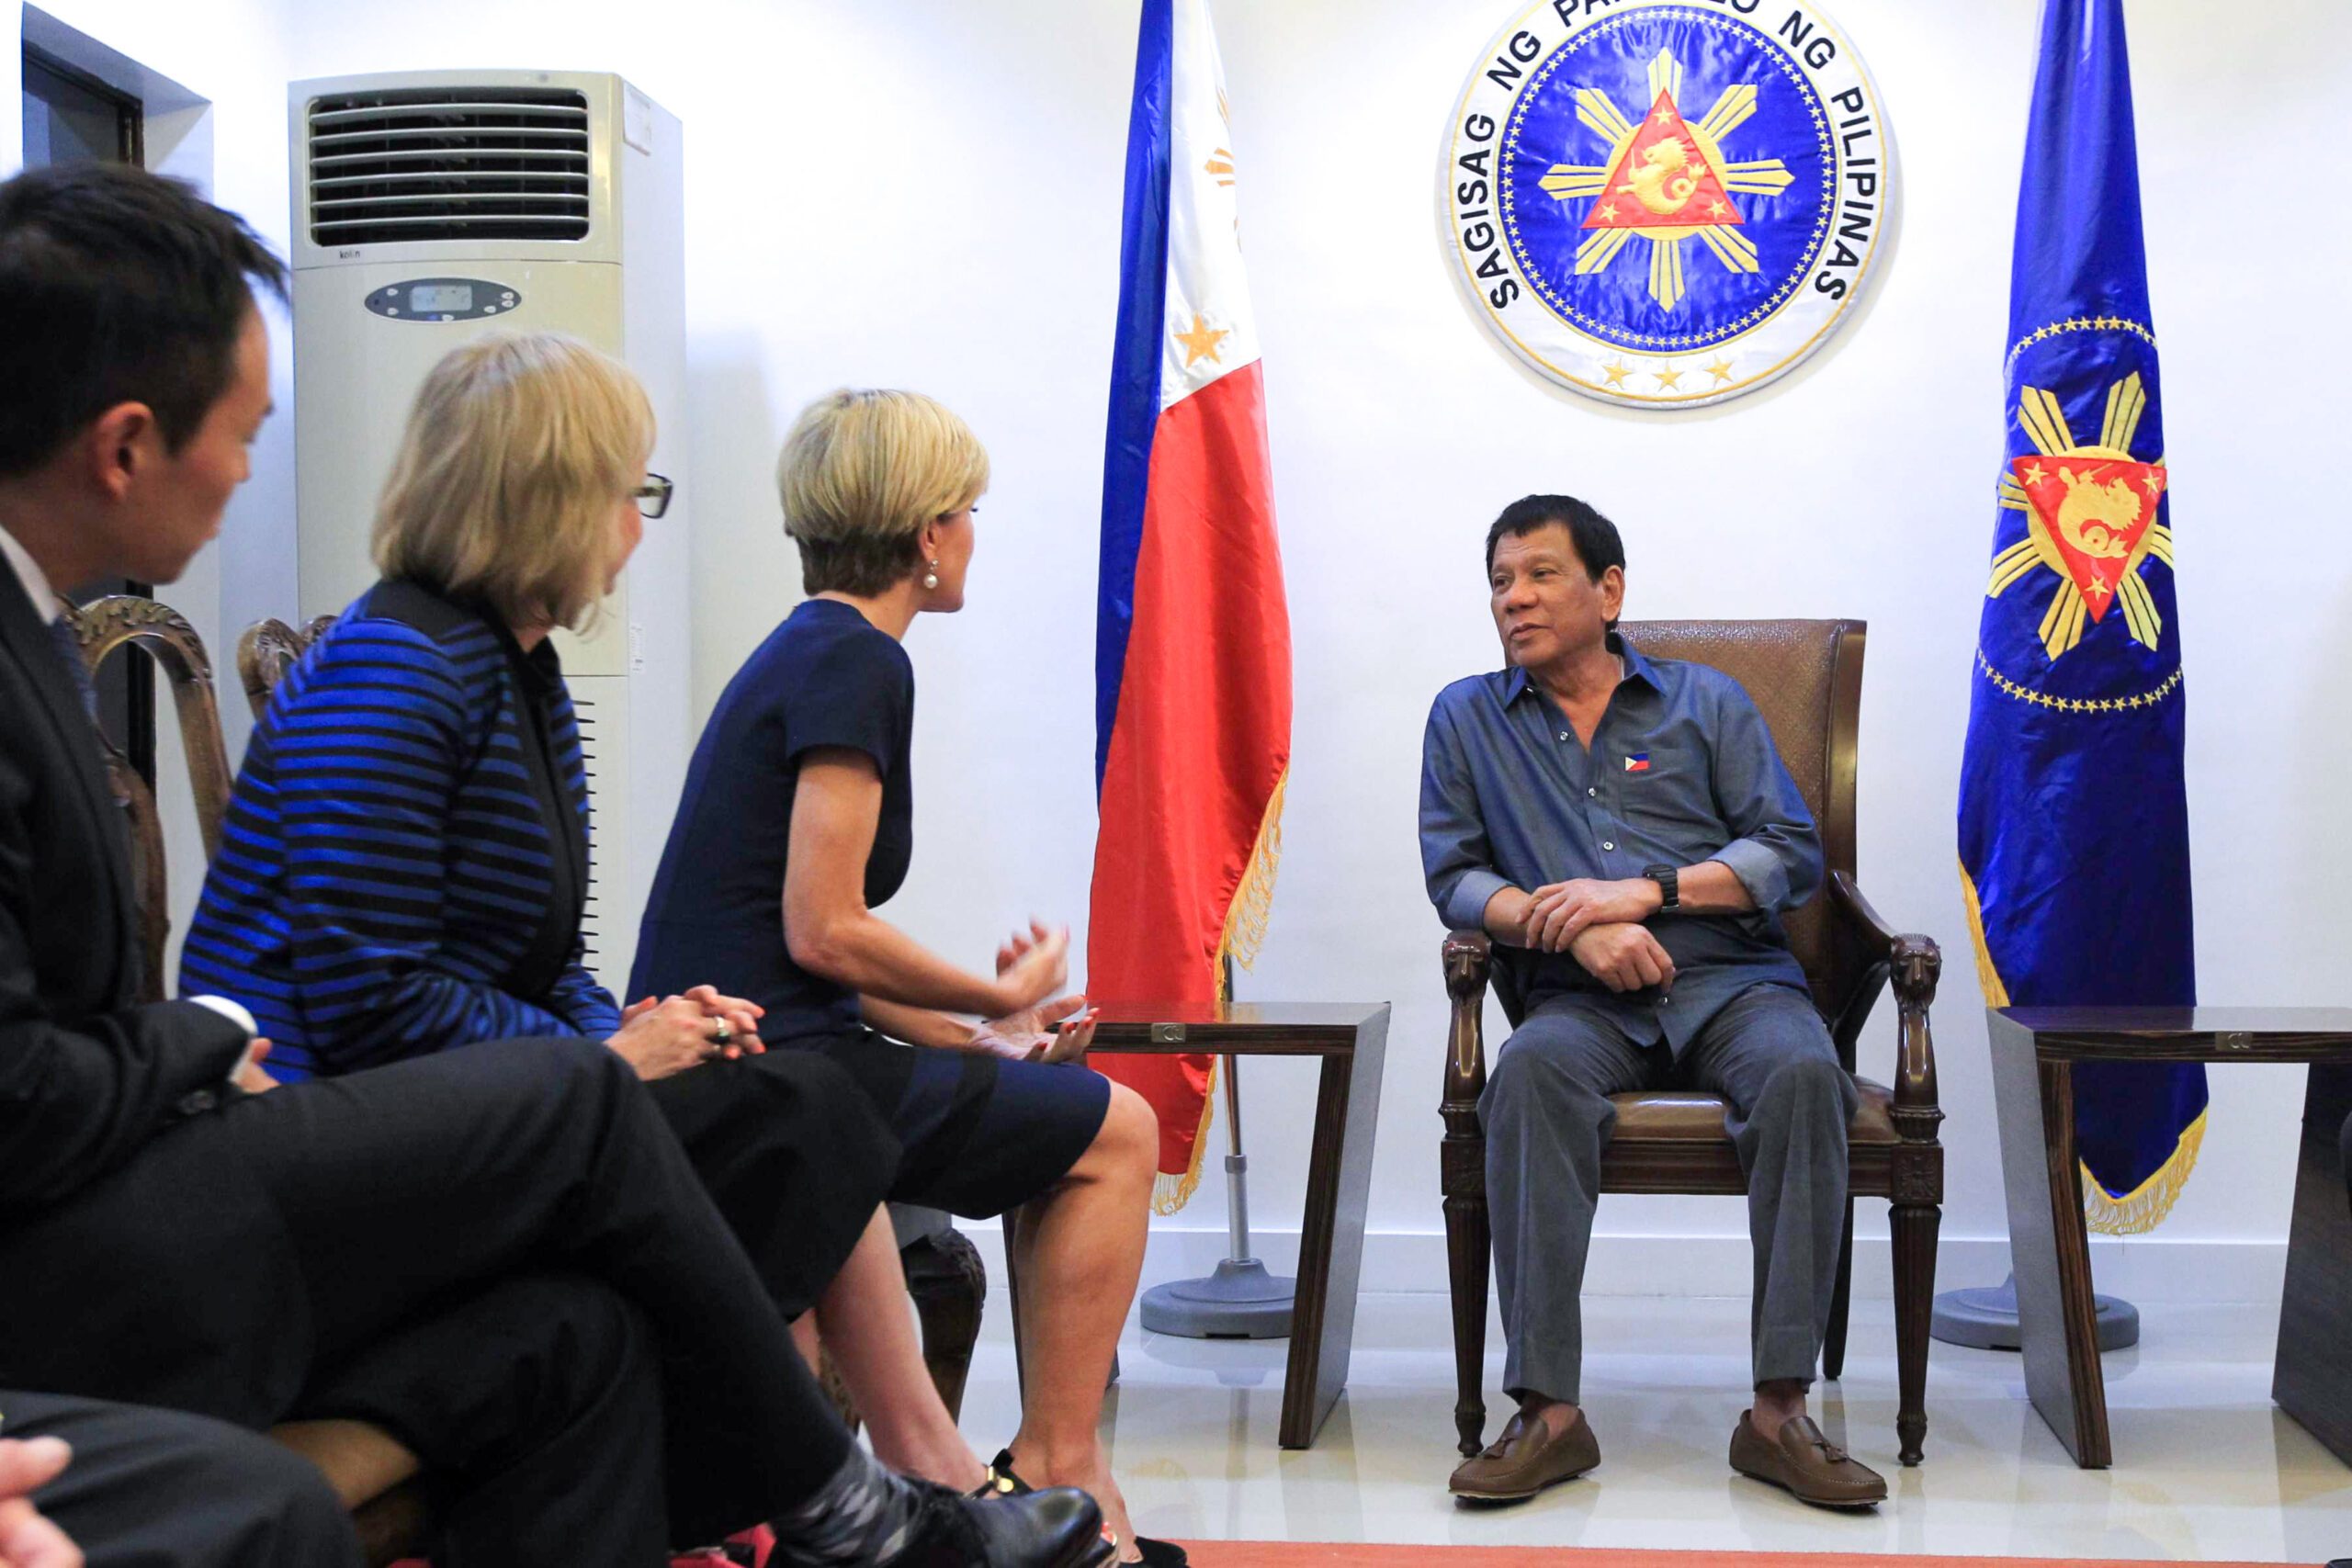 Duterte, Bishop discuss South China Sea dispute, terrorism